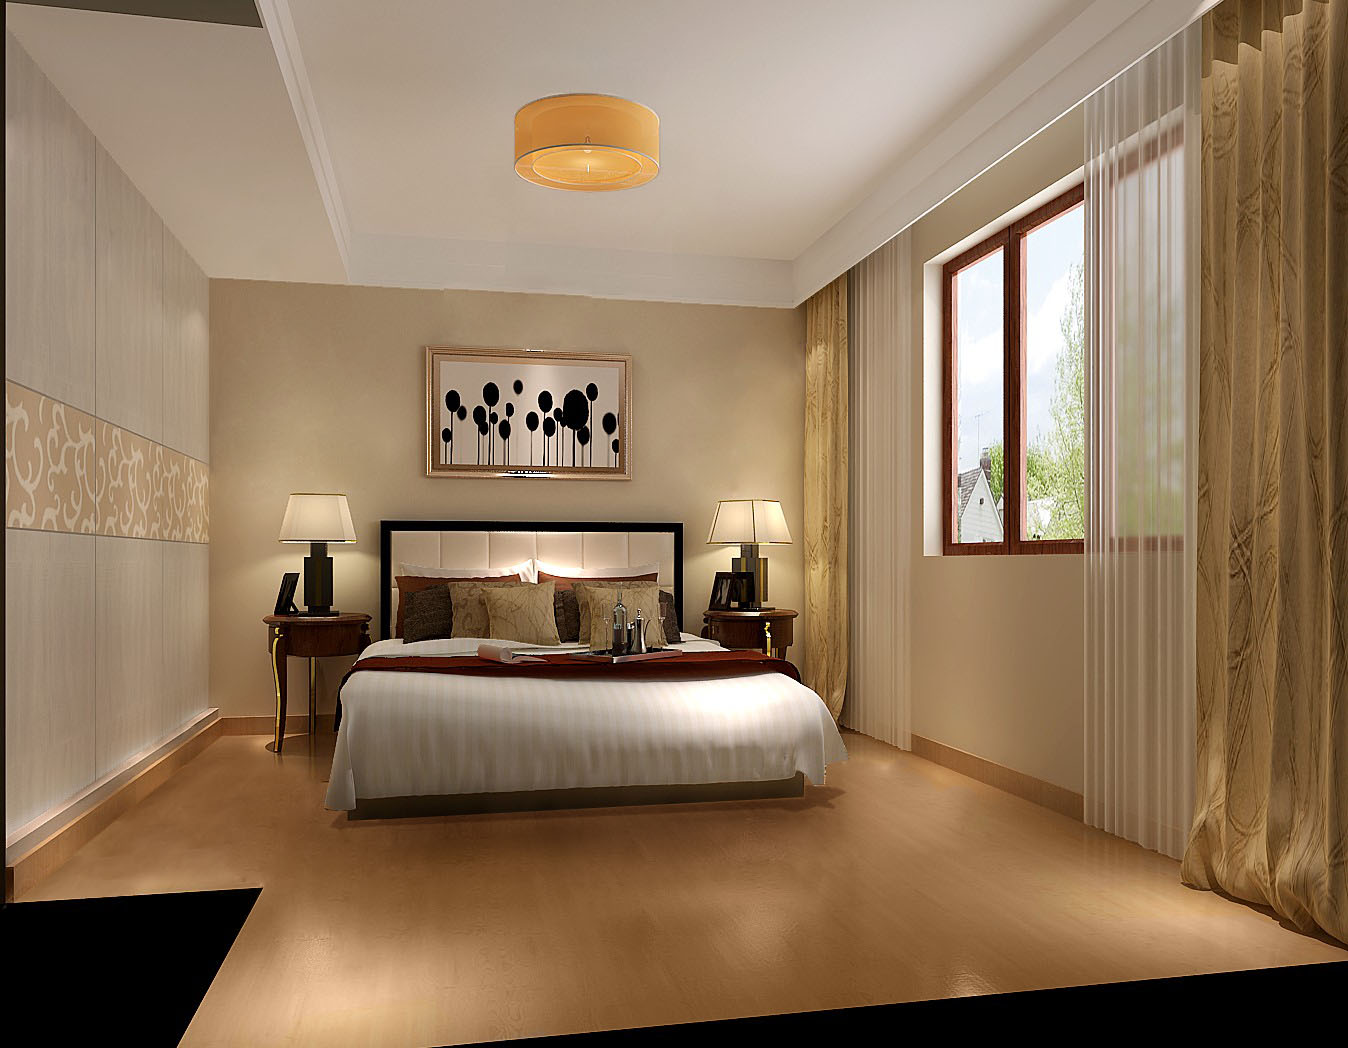 复式公寓 白领 小资 复古 简约 欧式 别墅 卧室图片来自重庆高度国际装饰工程有限公司在中铁花语城-简欧的分享